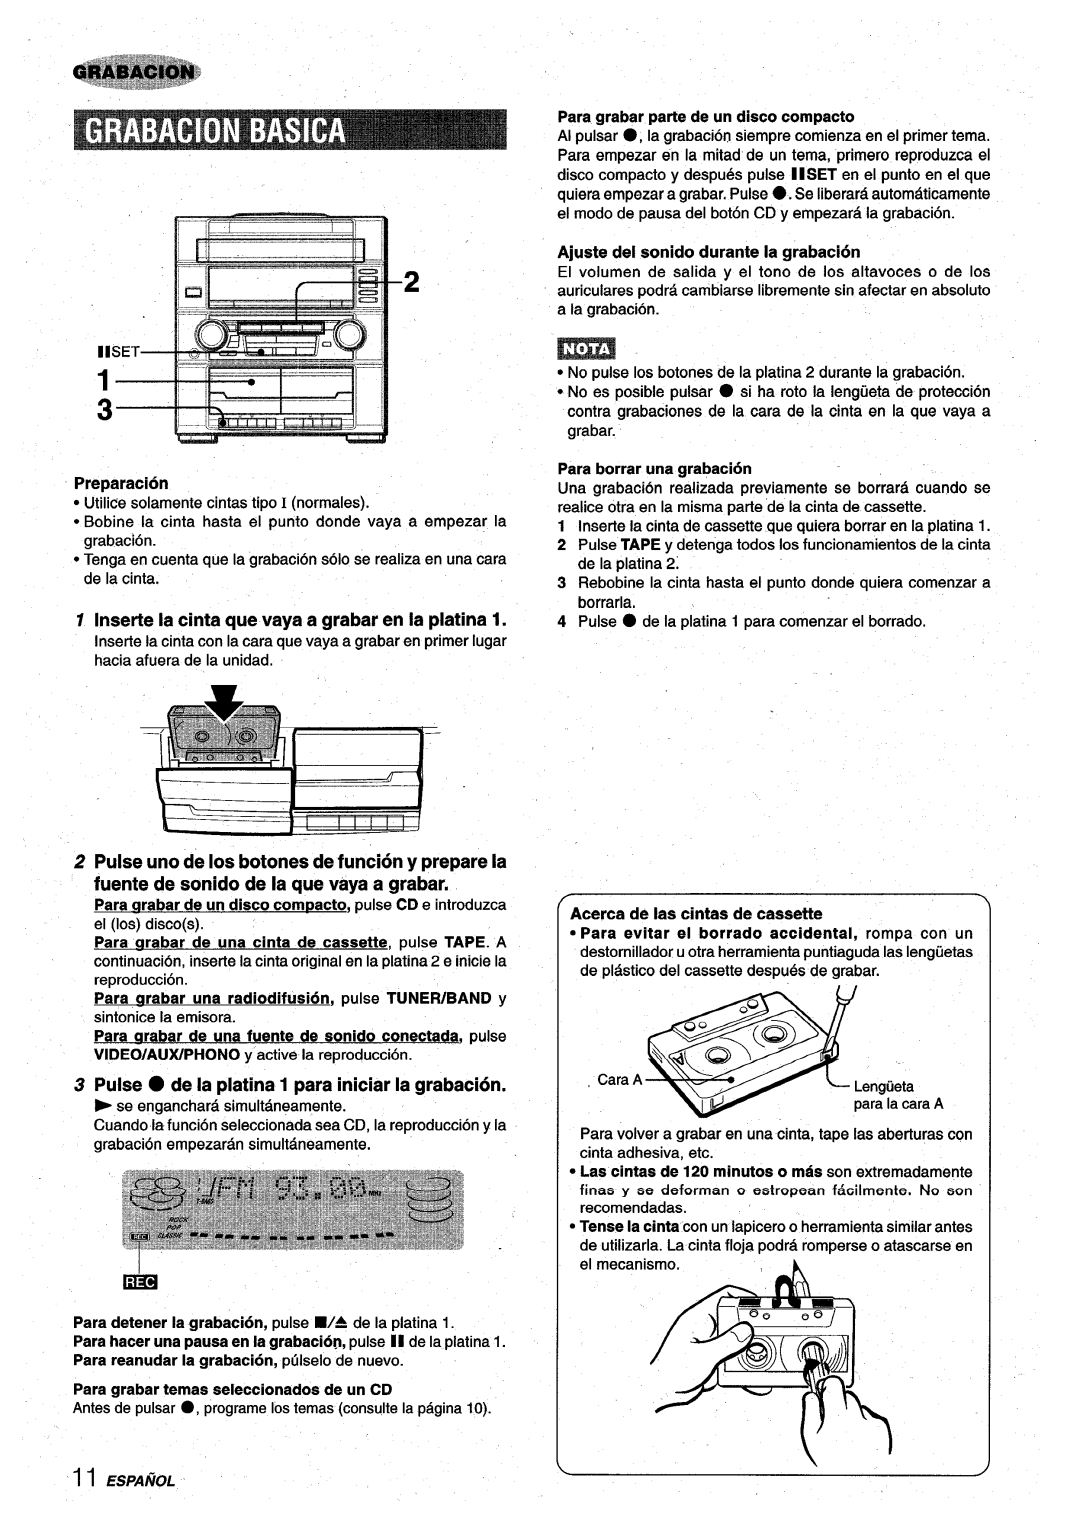 Aiwa XR-M75 manual Inserte la cinta que vaya a grabar en la platina, Pulse uno de Ios botones de funcion y prepare la 